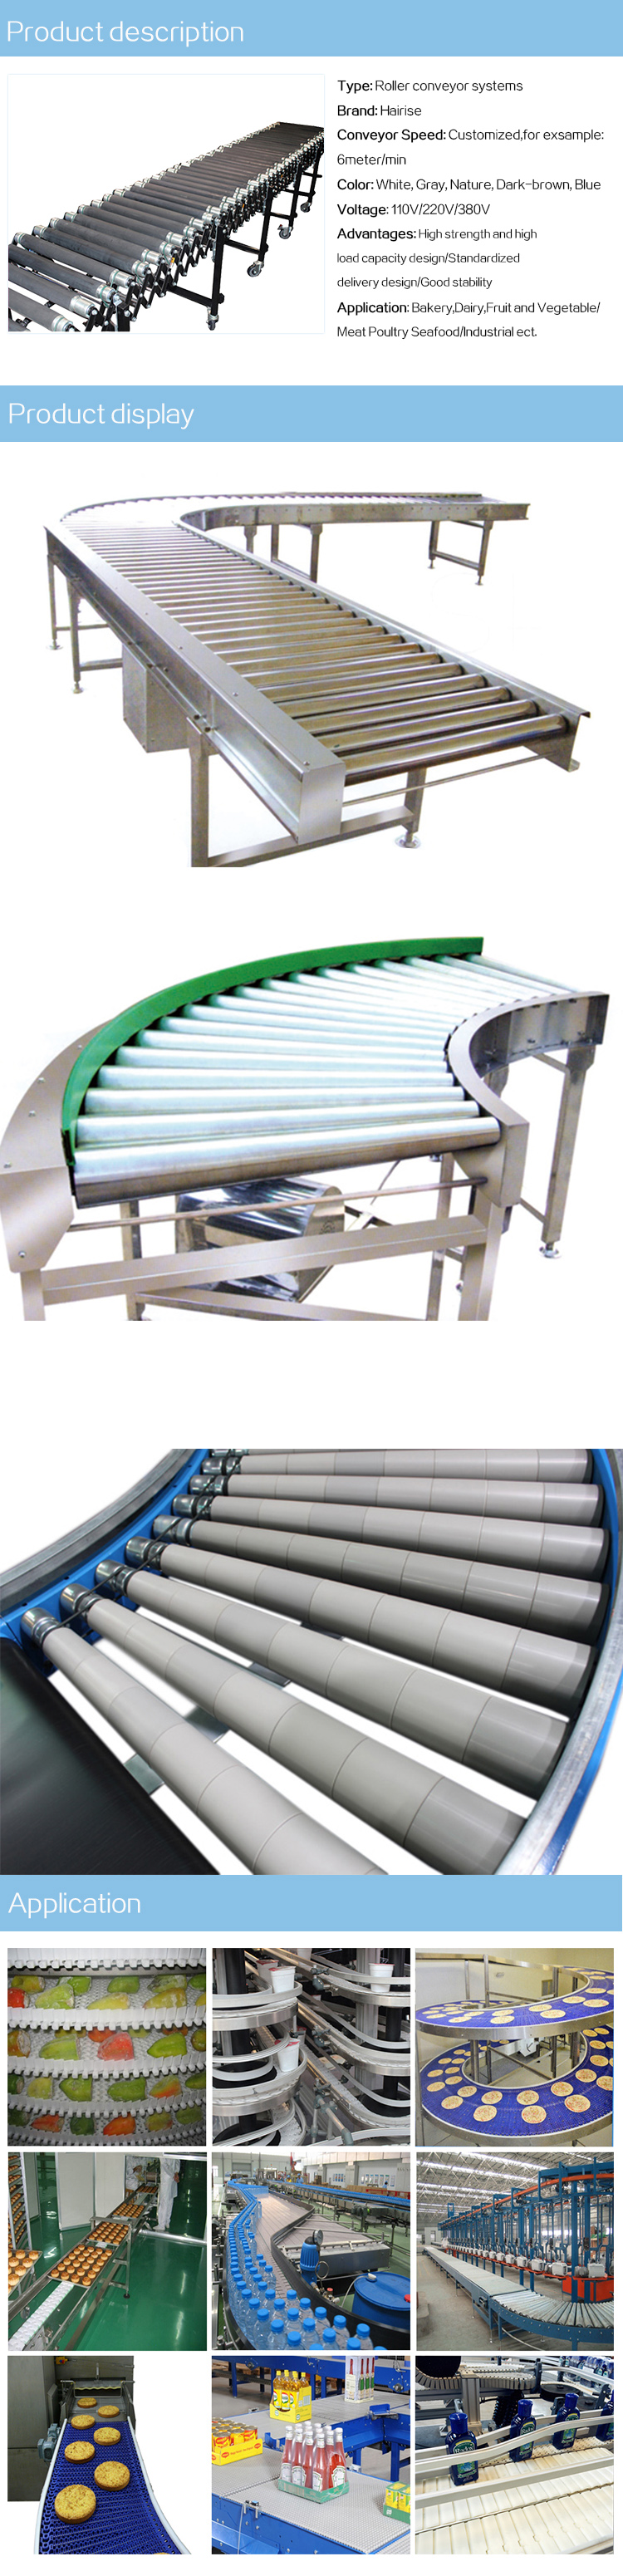 roller conveyor systems.jpg